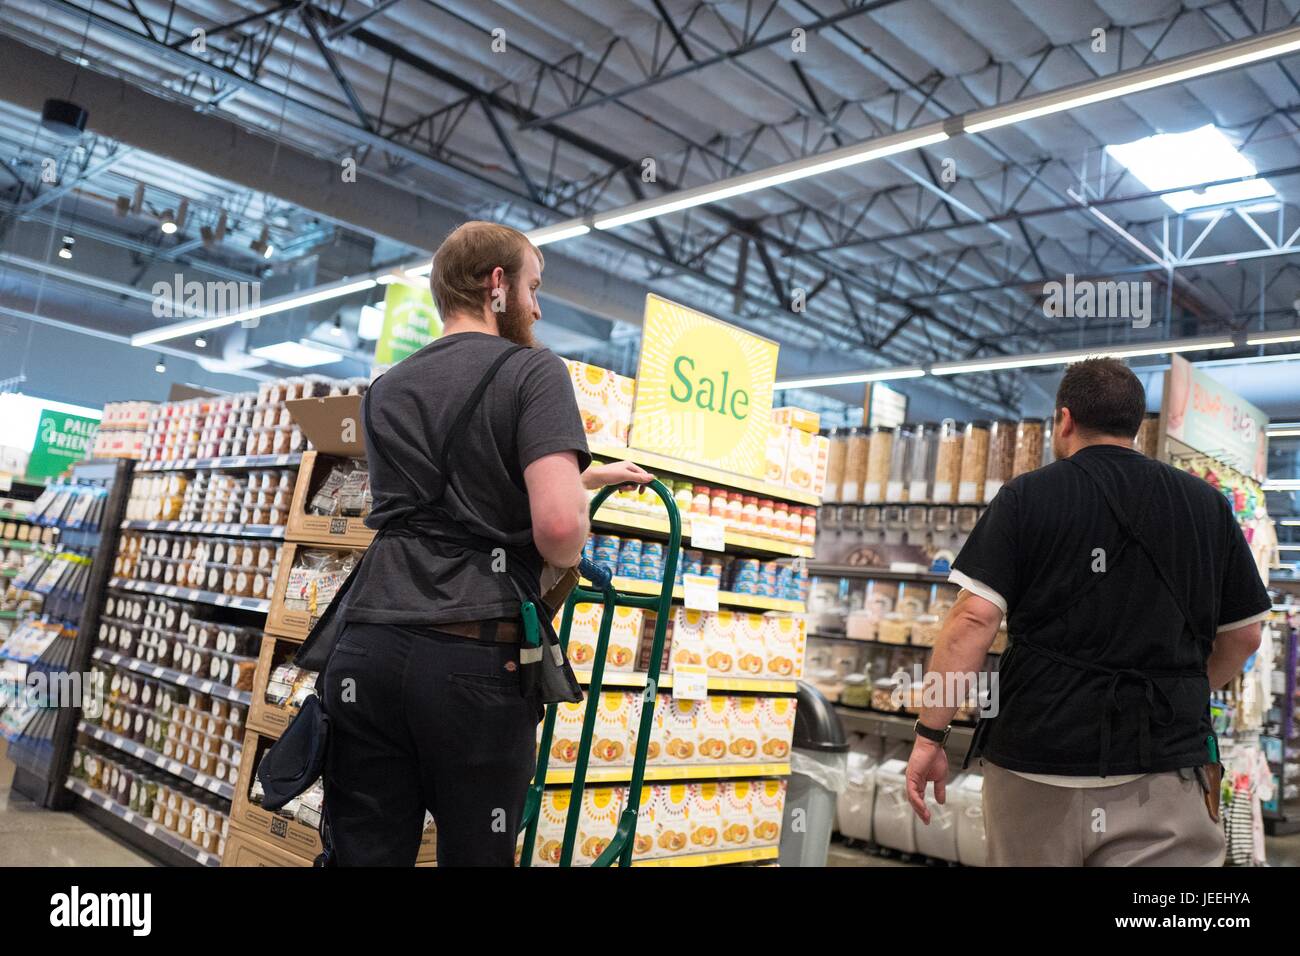 Zwei Mitarbeiter gehen vorbei an einem Schild mit der Aufschrift "Sale" im Supermarkt Whole Foods Market in Dublin, Kalifornien, 16. Juni 2017. Stockfoto